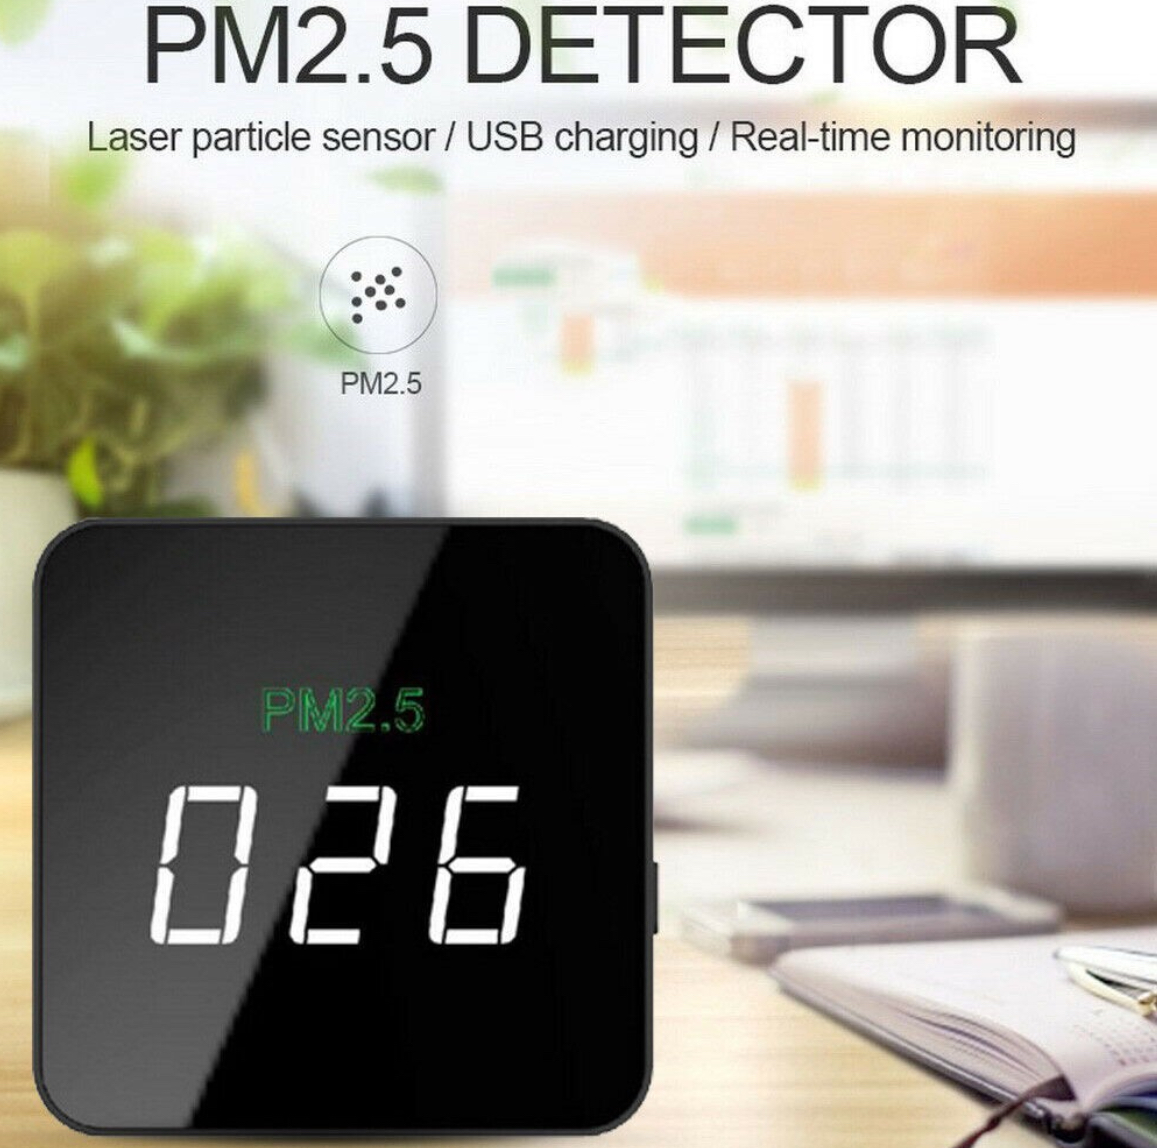 เครื่องวัดฝุ่น PM2.5 Air Detector เครื่องวัดคุณภาพอากาศ พร้อมจอ LCD ใช้งานง่าย